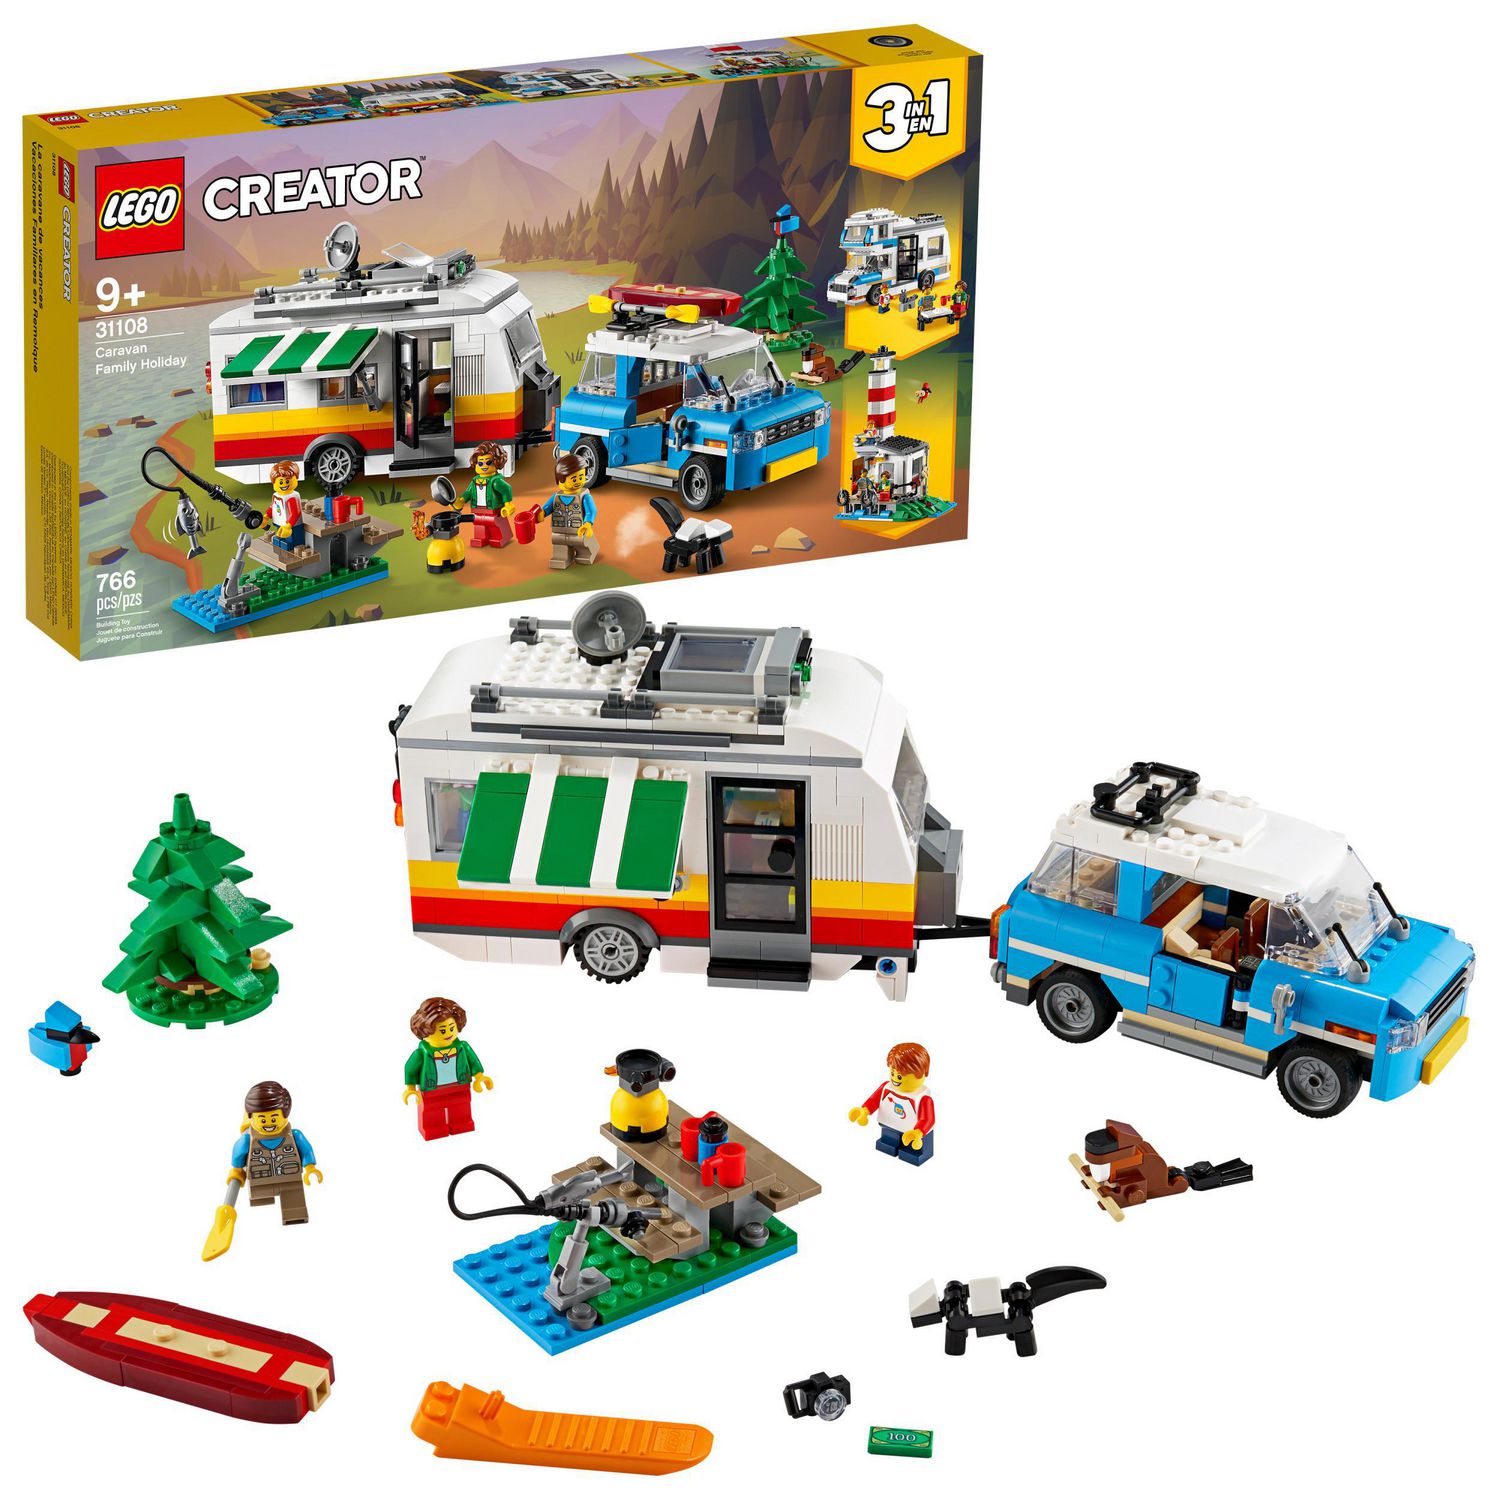 Lego Set 869 Ubicaciondepersonas cdmx gob mx